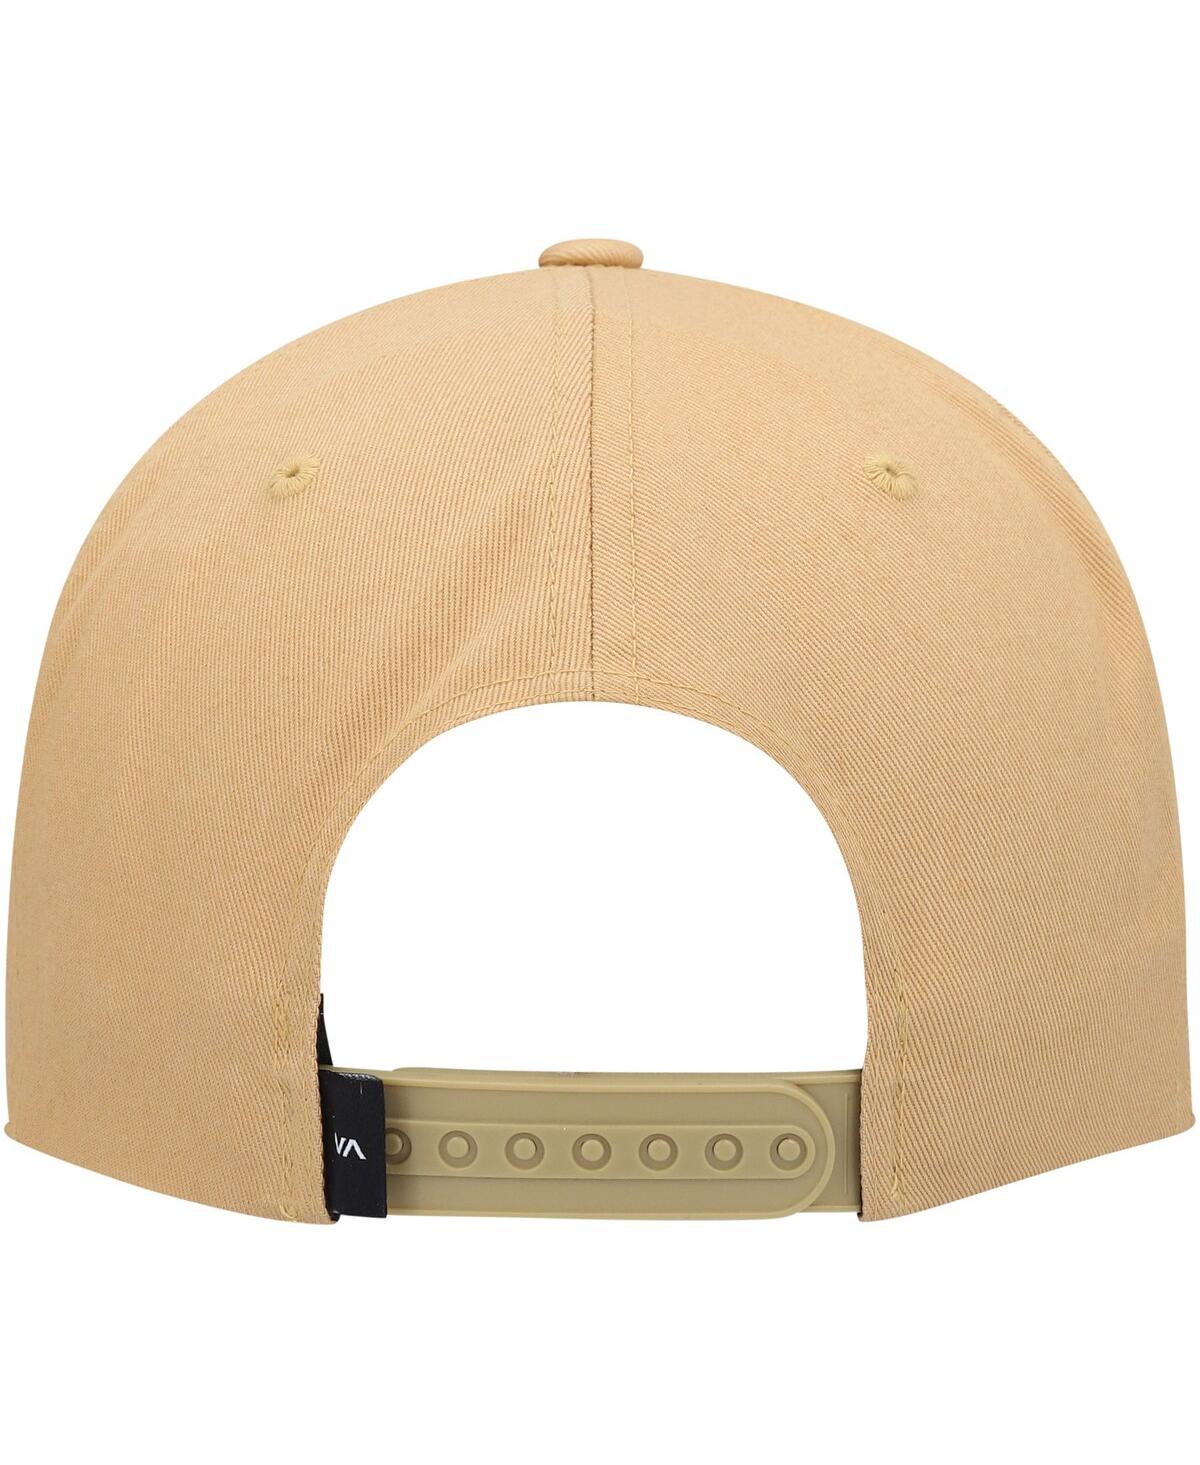 Shop Rvca Men's  Gold Square Snapback Hat